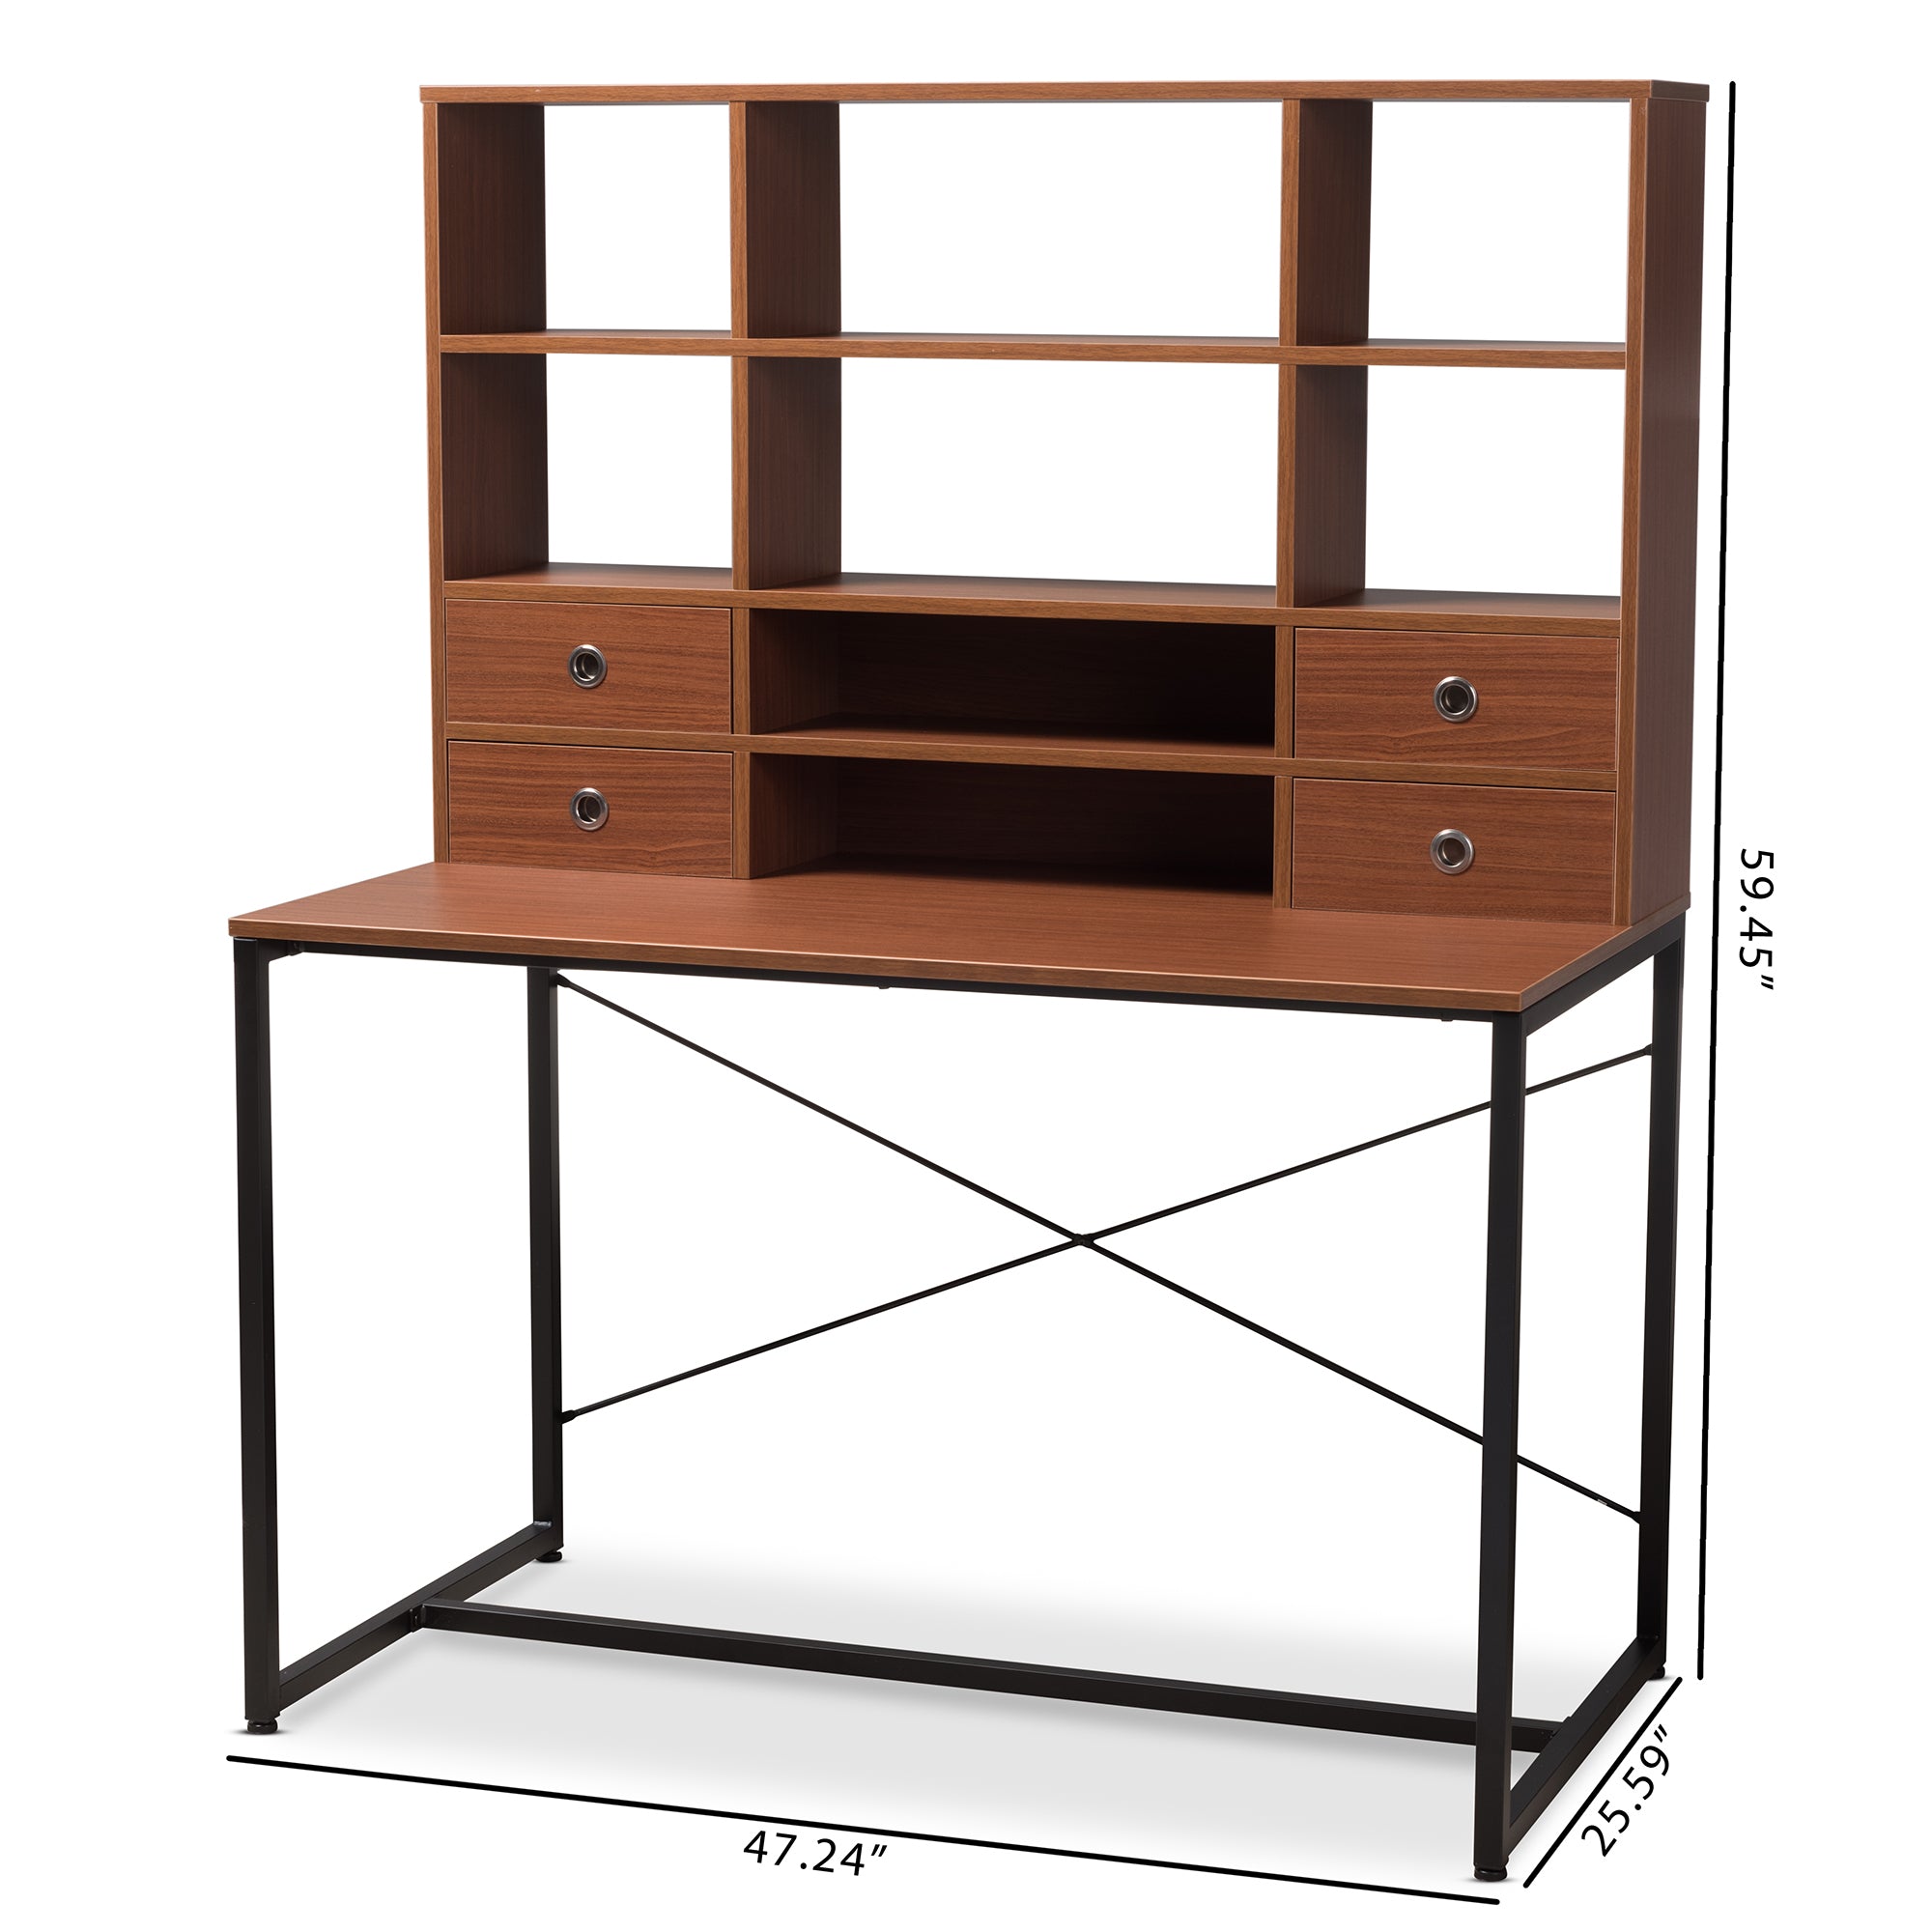 Edwin Industrial Desk 2-in-1-Desk-Baxton Studio - WI-Wall2Wall Furnishings